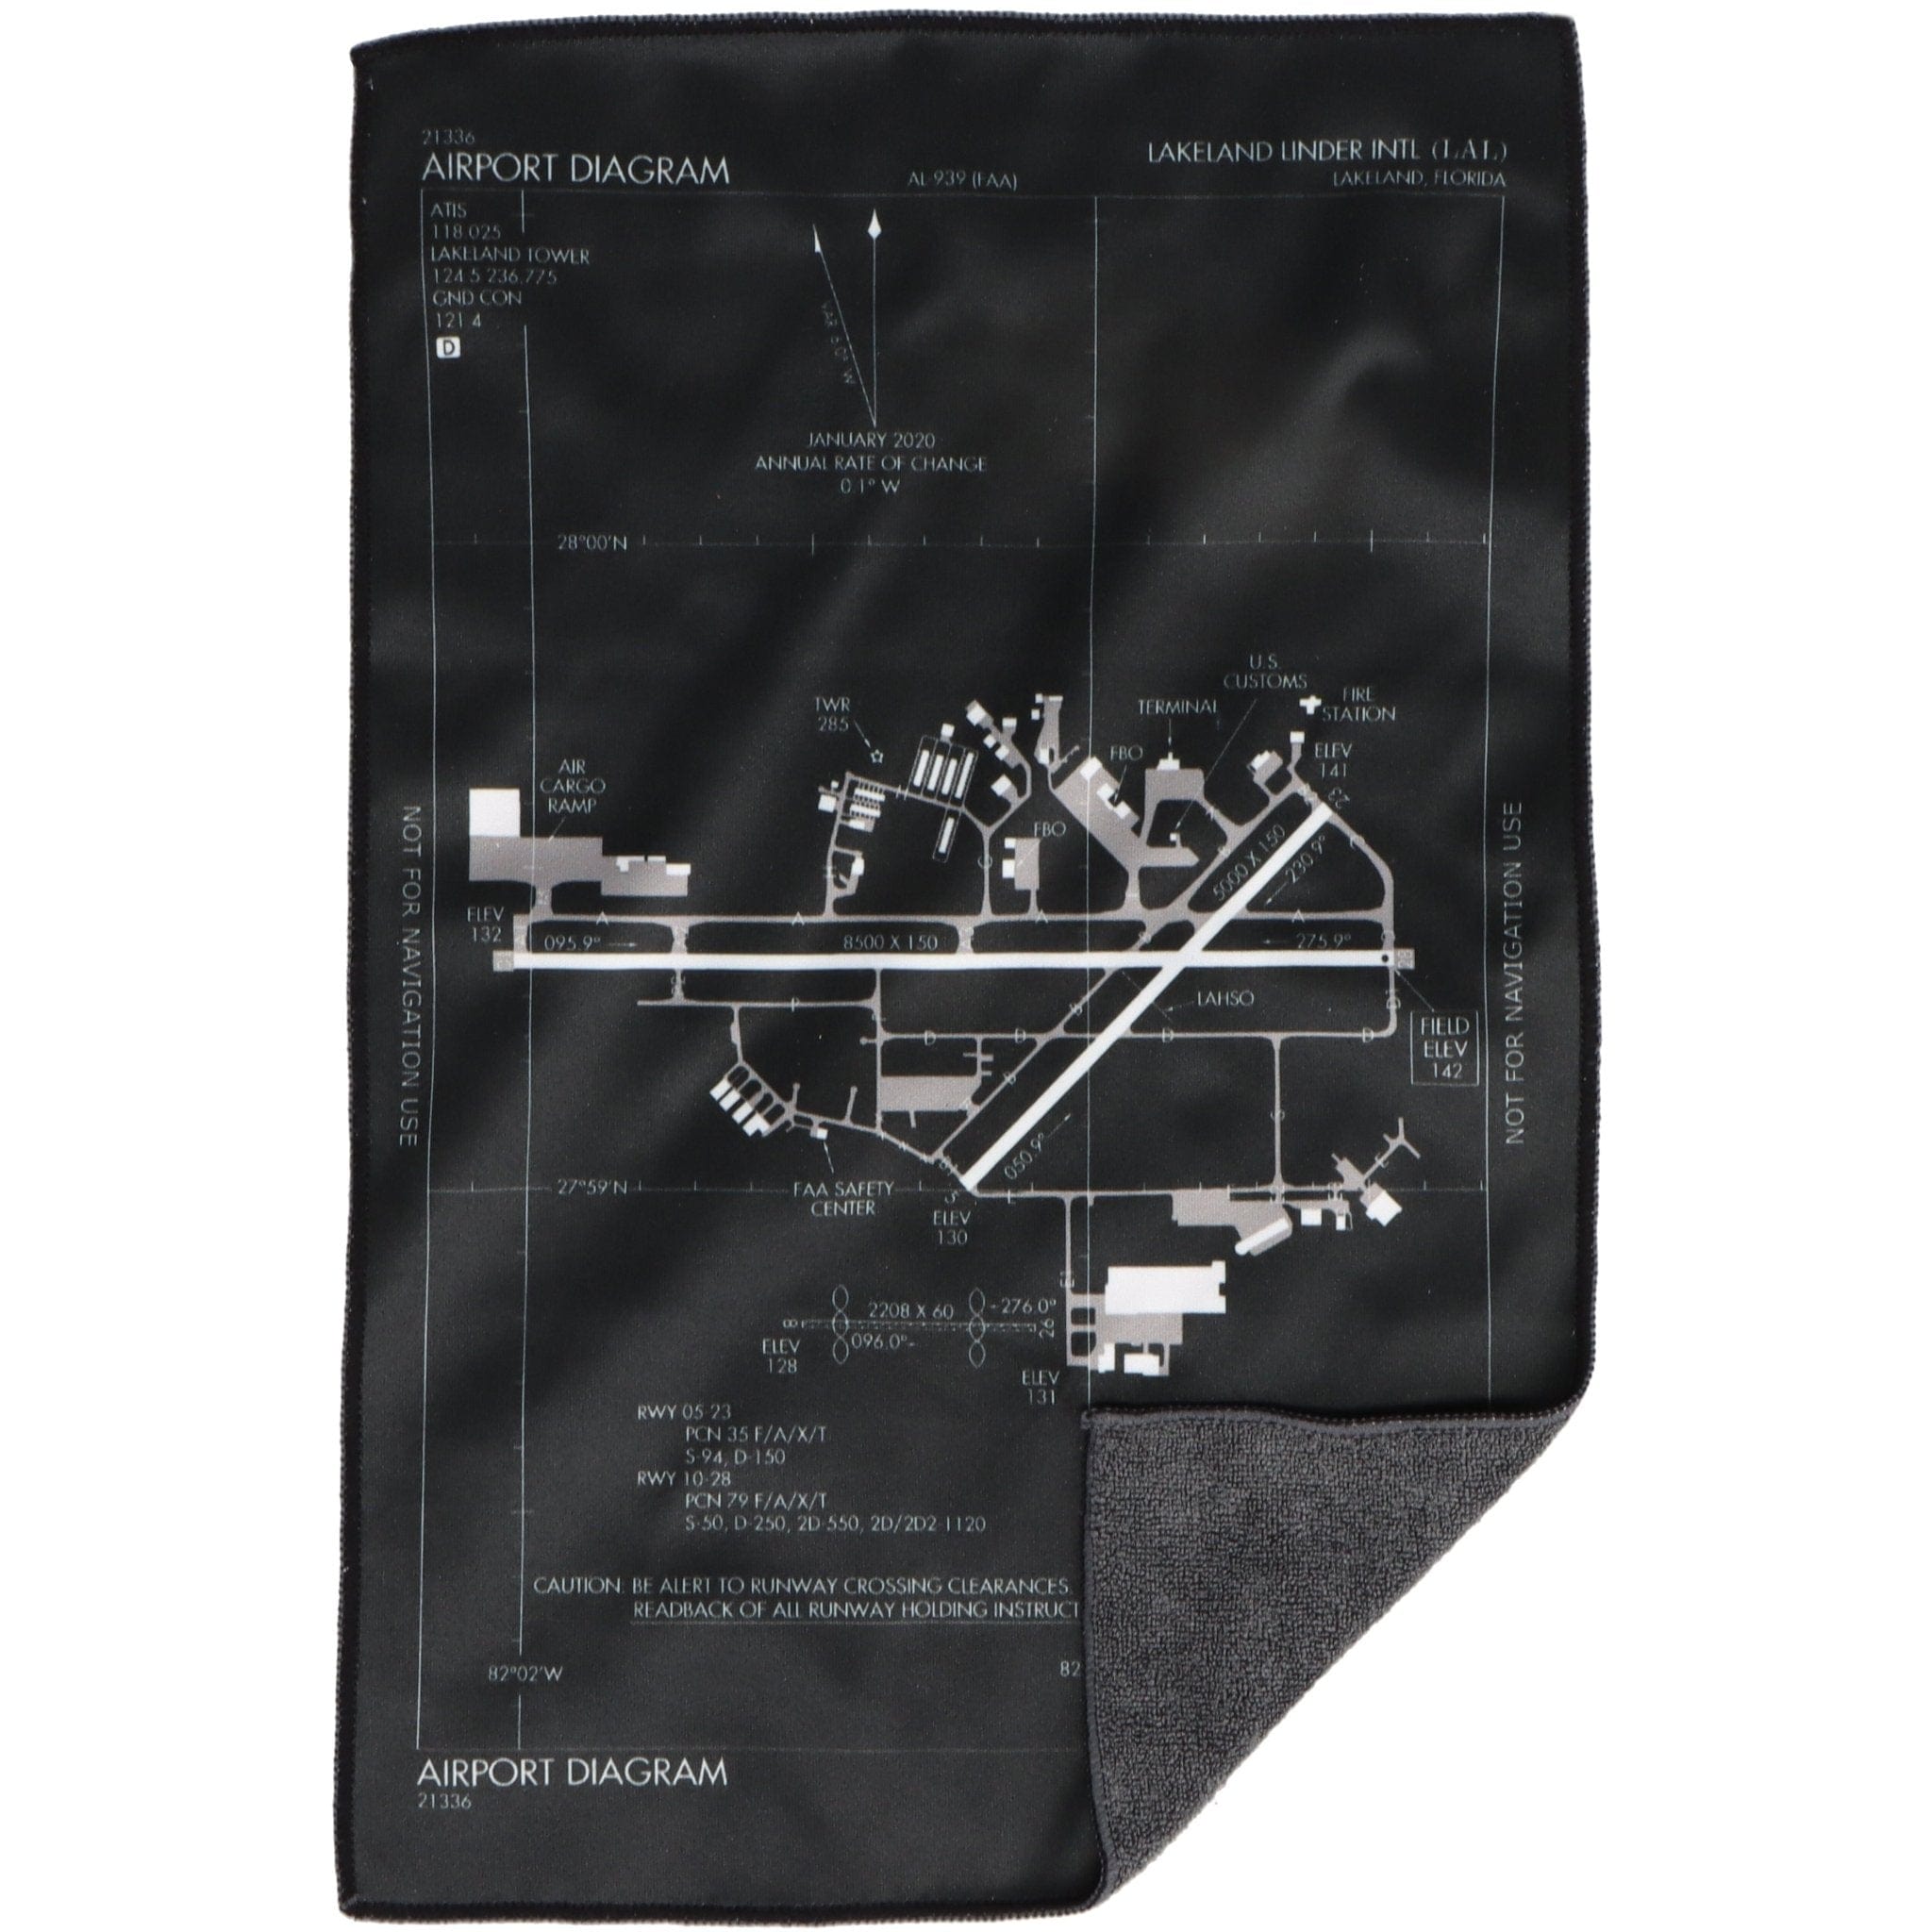 Chart Cloth (Microfiber/Terry Cloth) - PilotMall.com